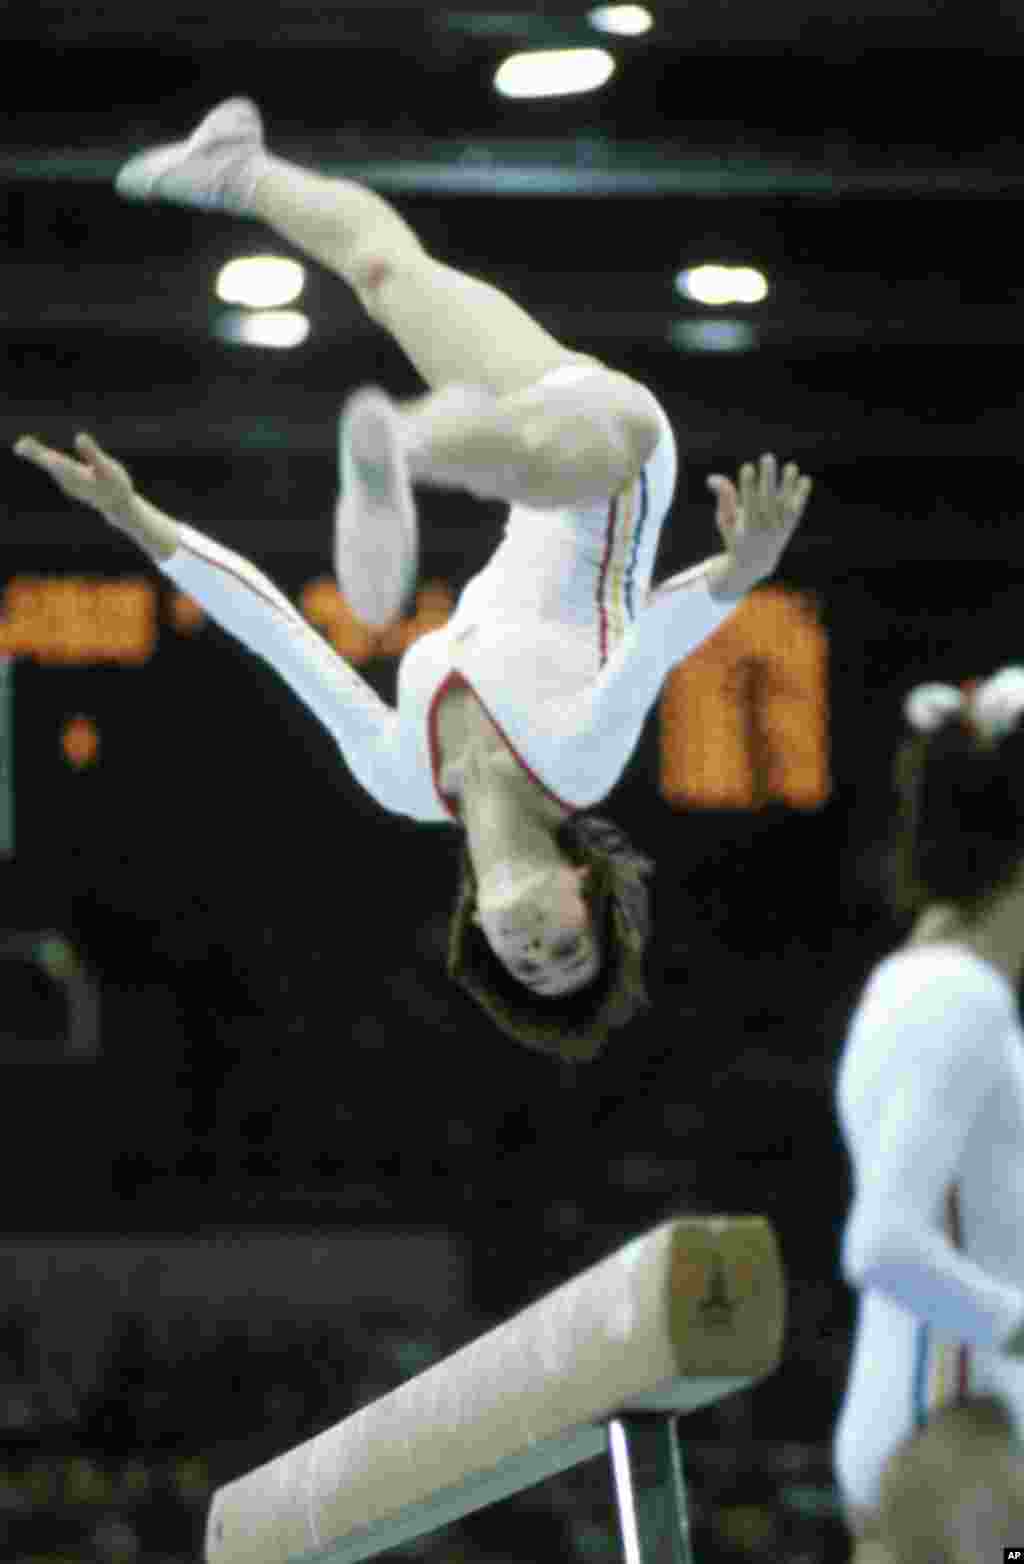 Румунська гімнастка Надя Команечі виконує &laquo;перекид&raquo; під час виступу, за який вона отримає чергову ідеальну десятку, цього разу на балансирі. Її перші круглі 10 балів були присуджені на Олімпіаді в Монреалі в 1976 році. Вона стала першою гімнасткою в історії, яка досягла такого результату